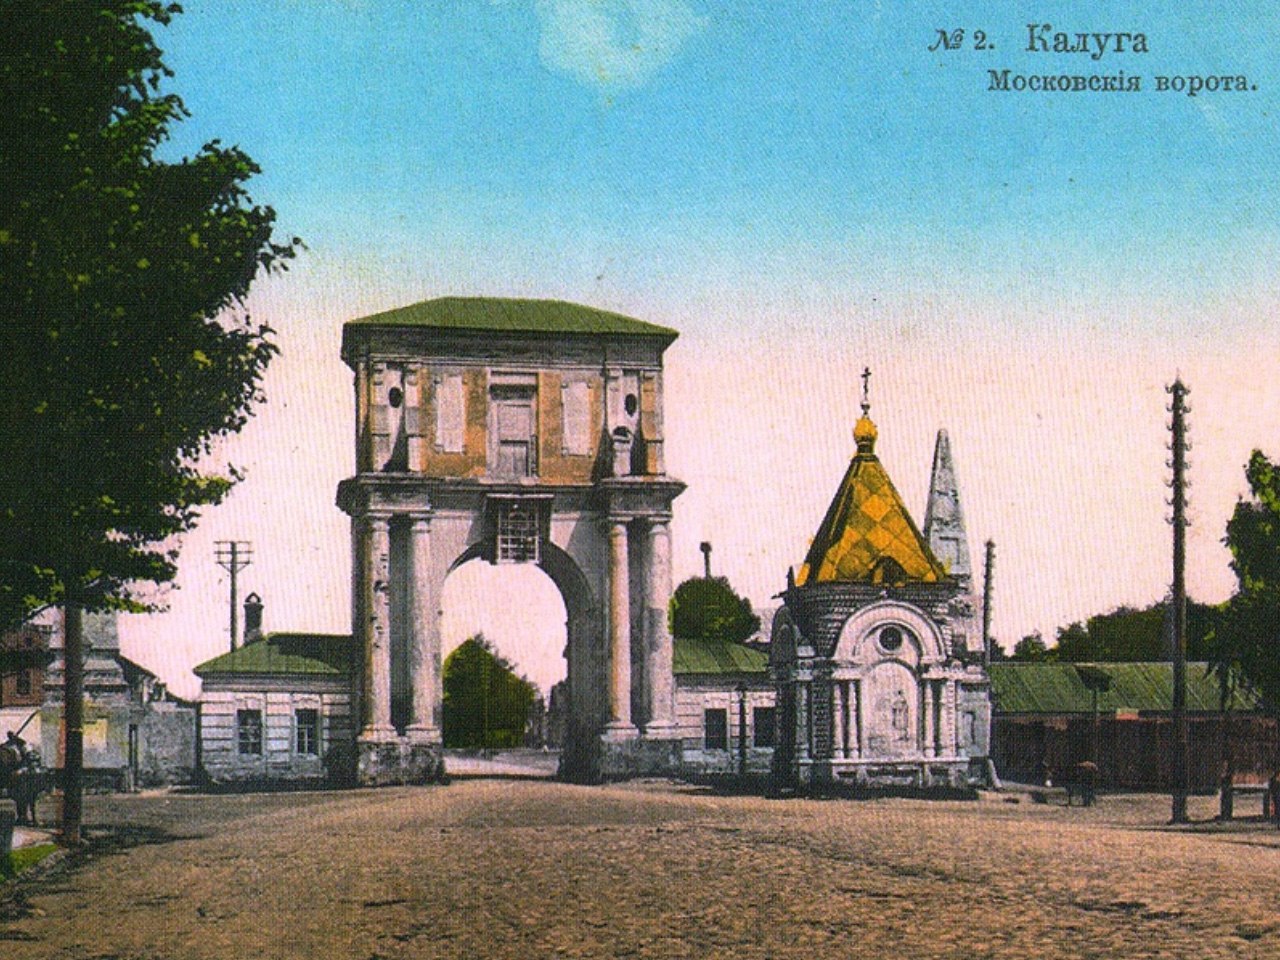 Павильон «Московские ворота» в Калуге — 